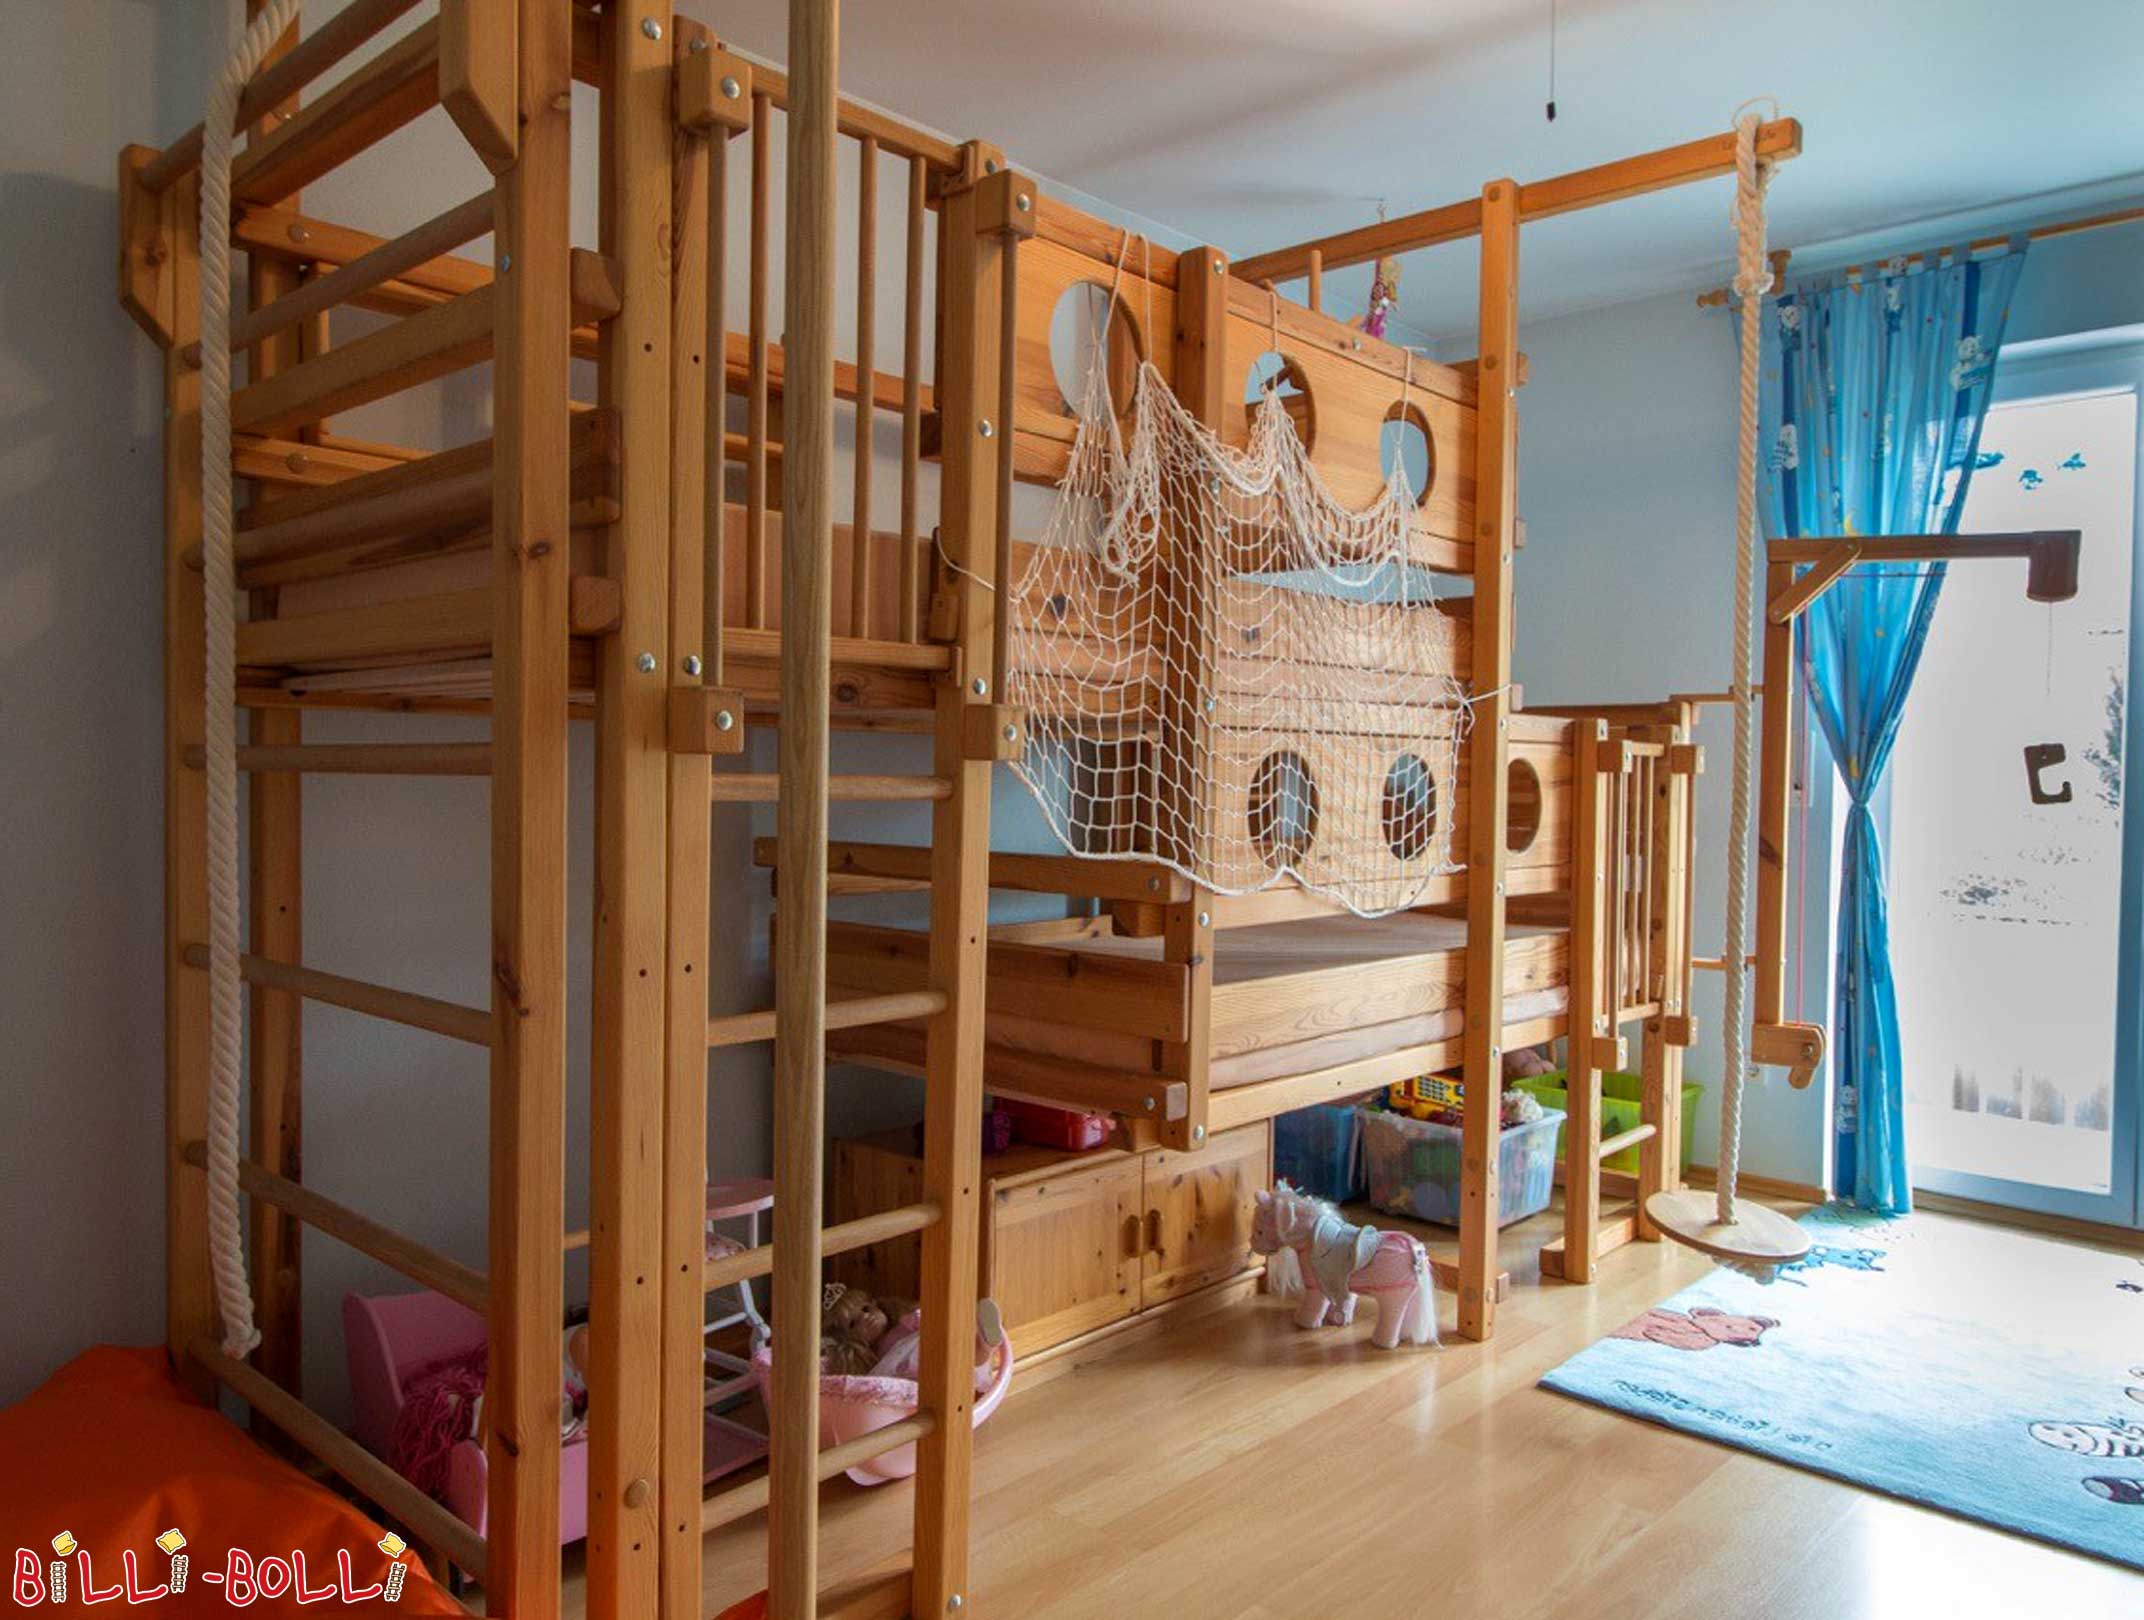 Dubbele hoogslapers van hout: het allebij boven stapelbed is een dubbele hoogslaper voor 2 kinderen (Allebij boven stapelbedden)